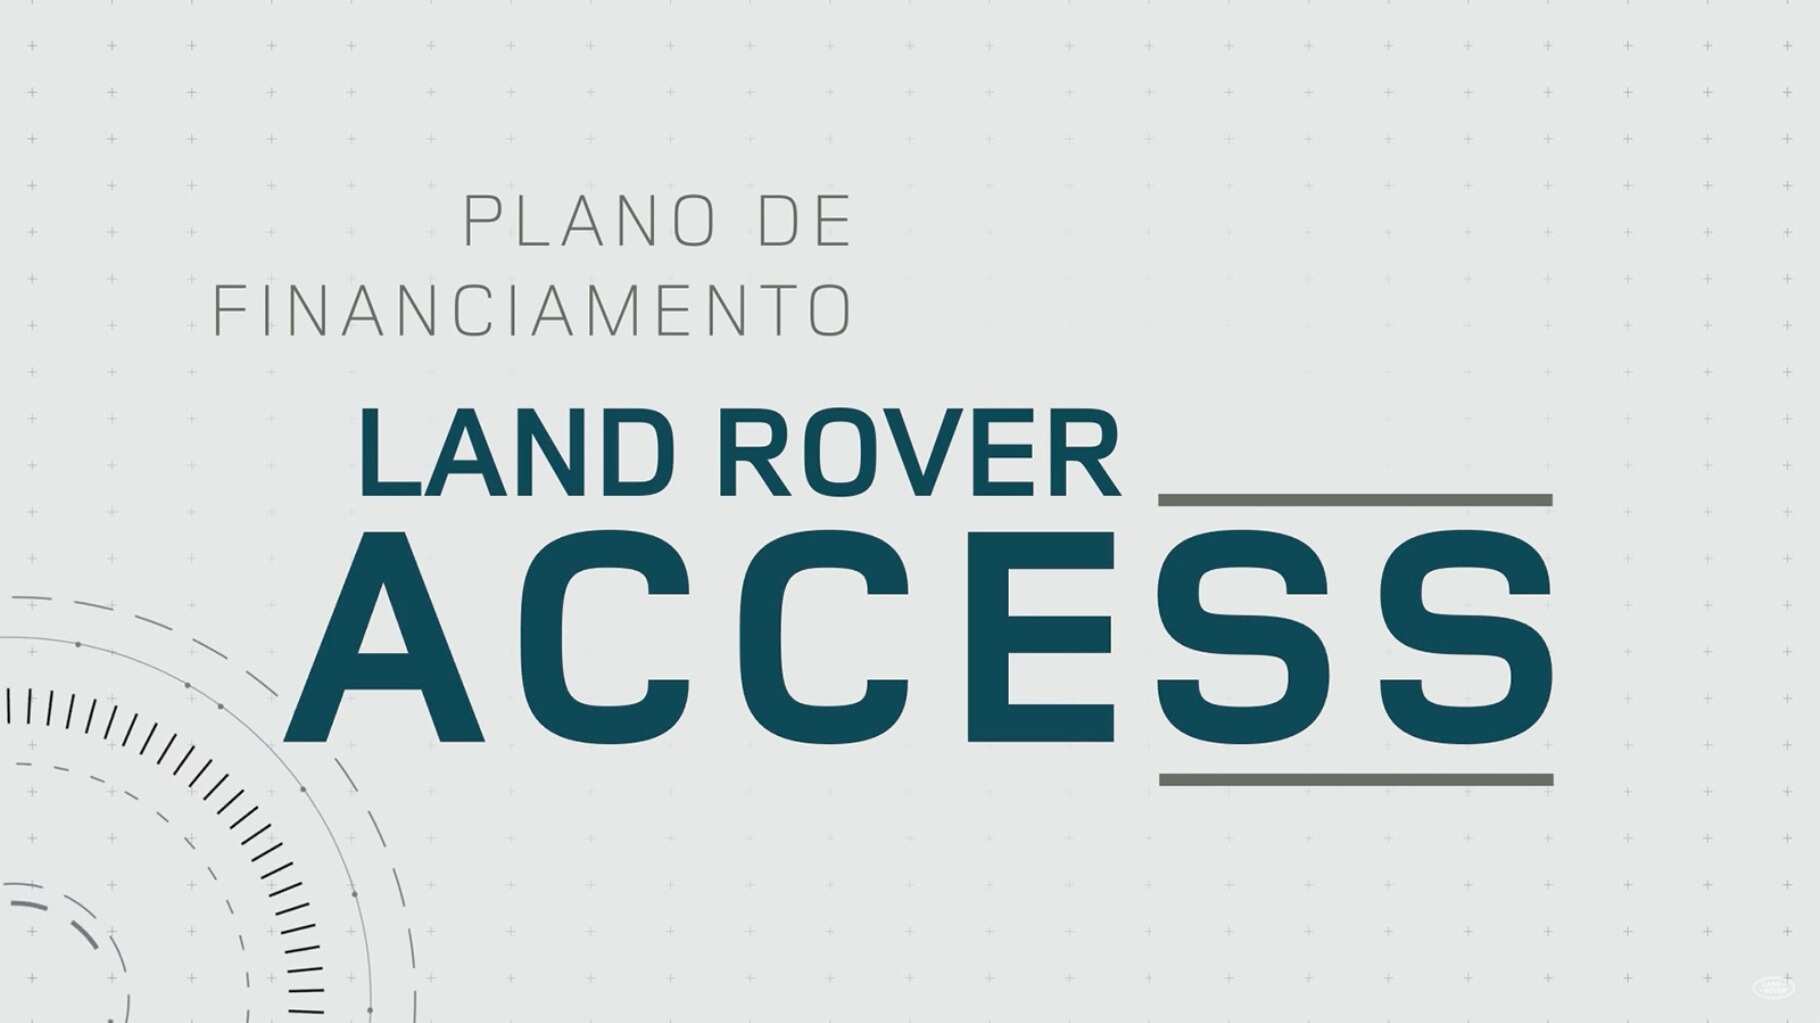 Plano de Financiamento Land Rover Access